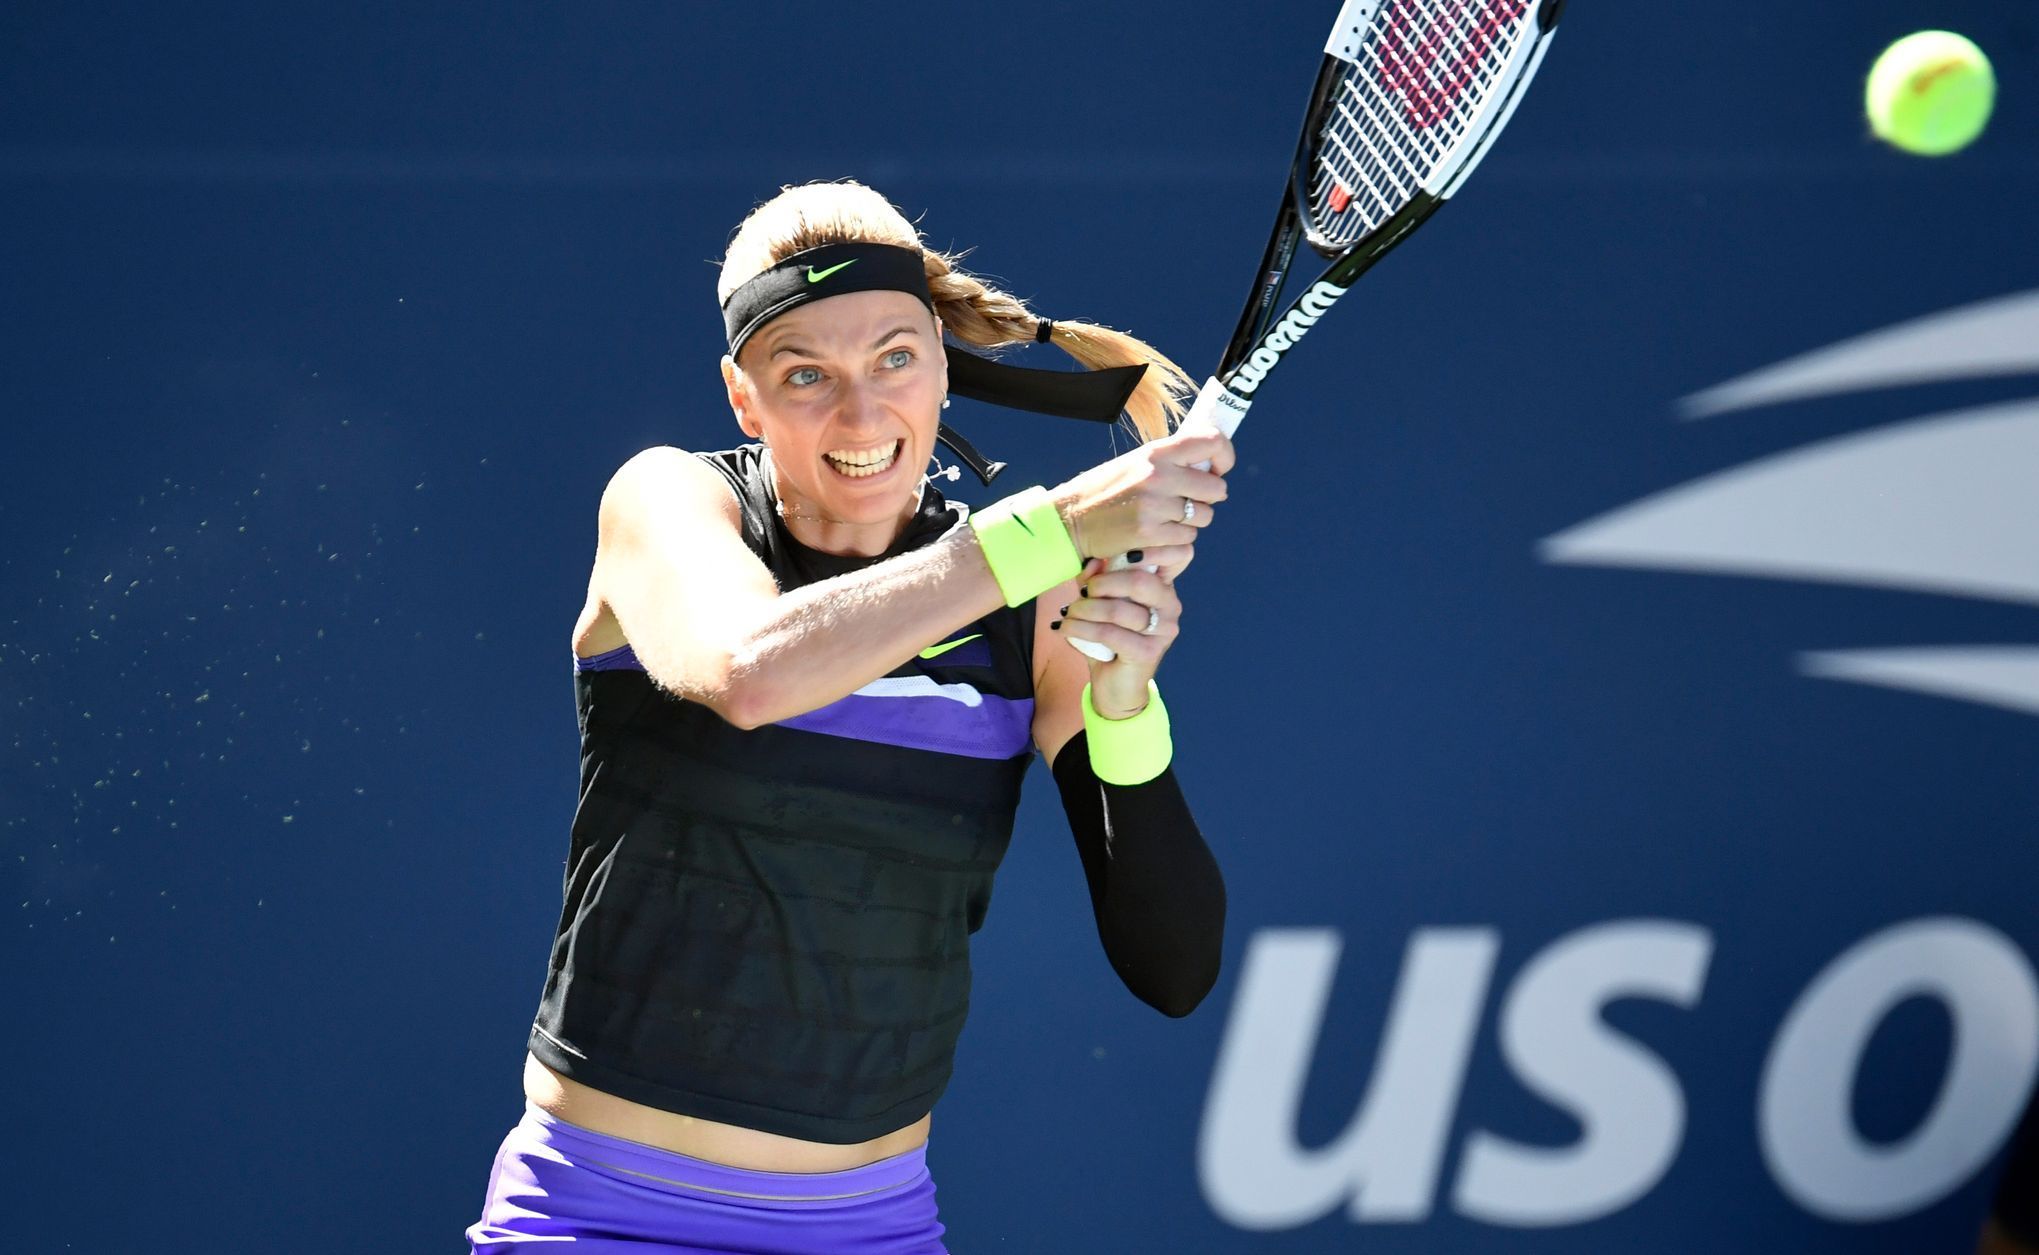 Petra Kvitová v zápase 2. kola US Open 2019